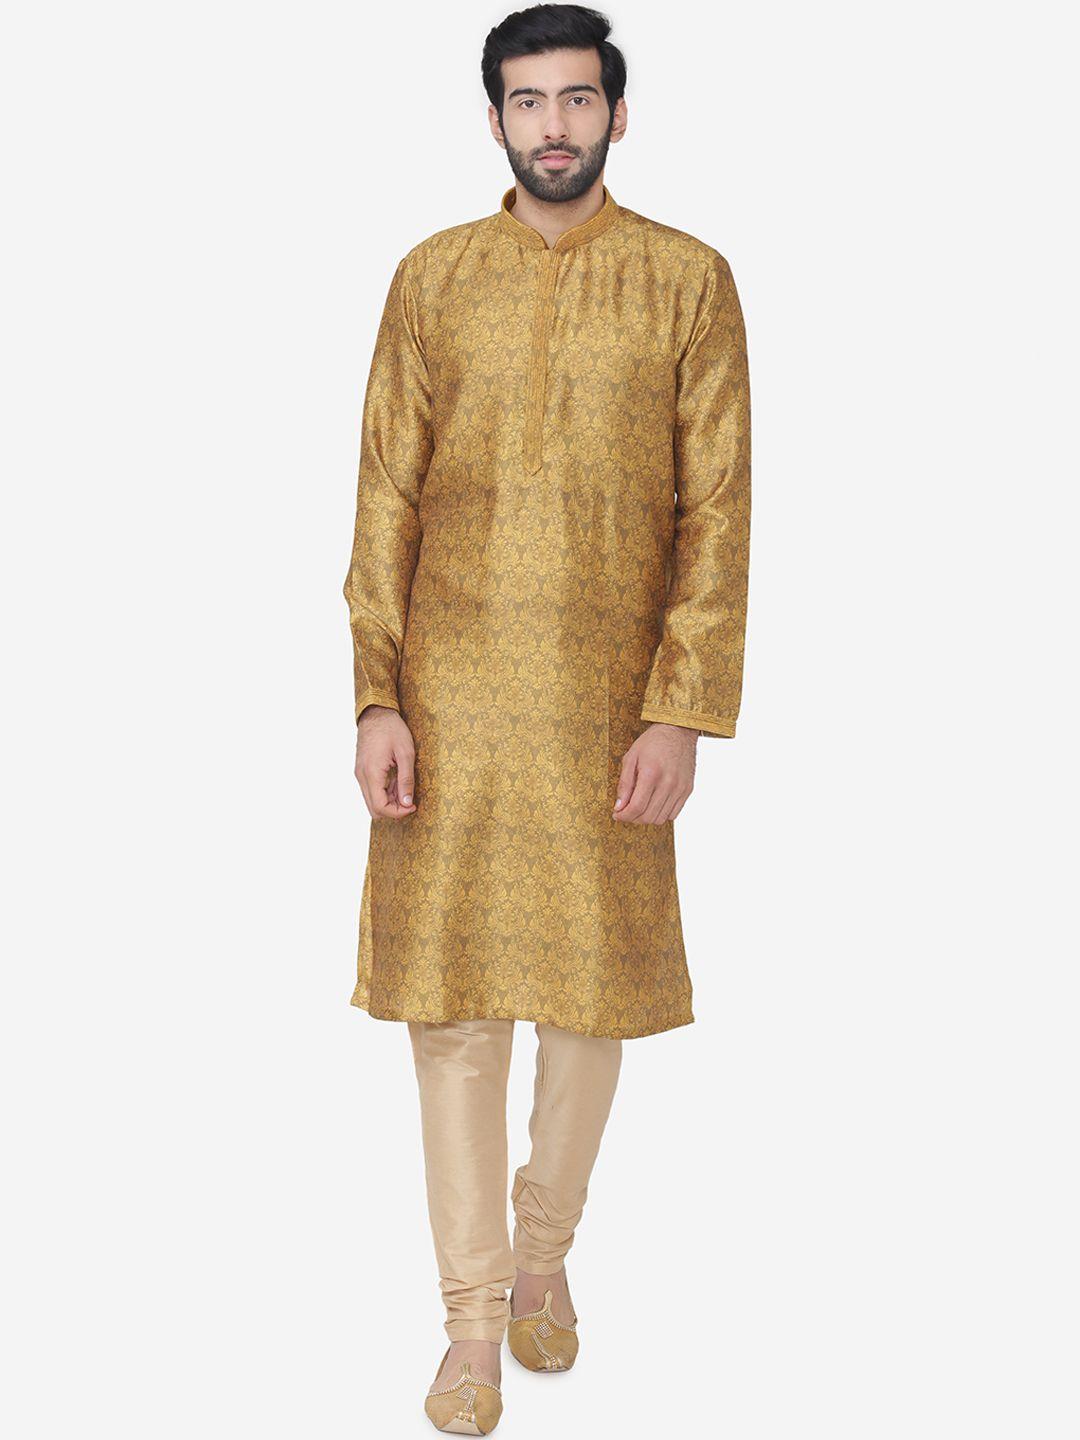 manu men brown & mustard yellow self design kurta with churidar